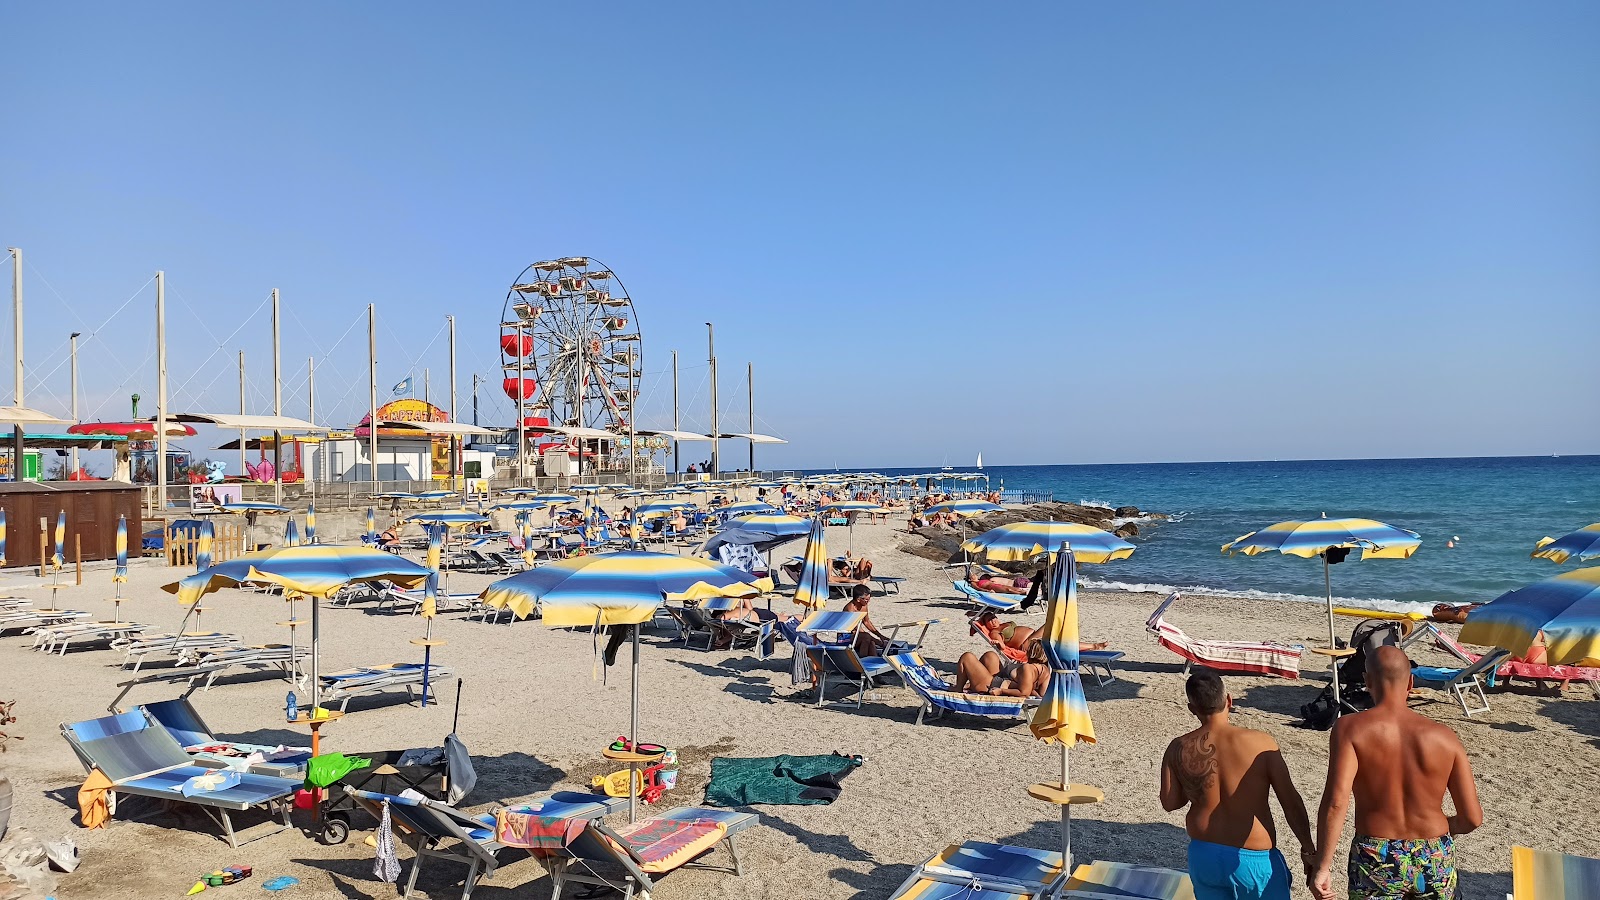 Spiaggia di Borghetto'in fotoğrafı - rahatlamayı sevenler arasında popüler bir yer